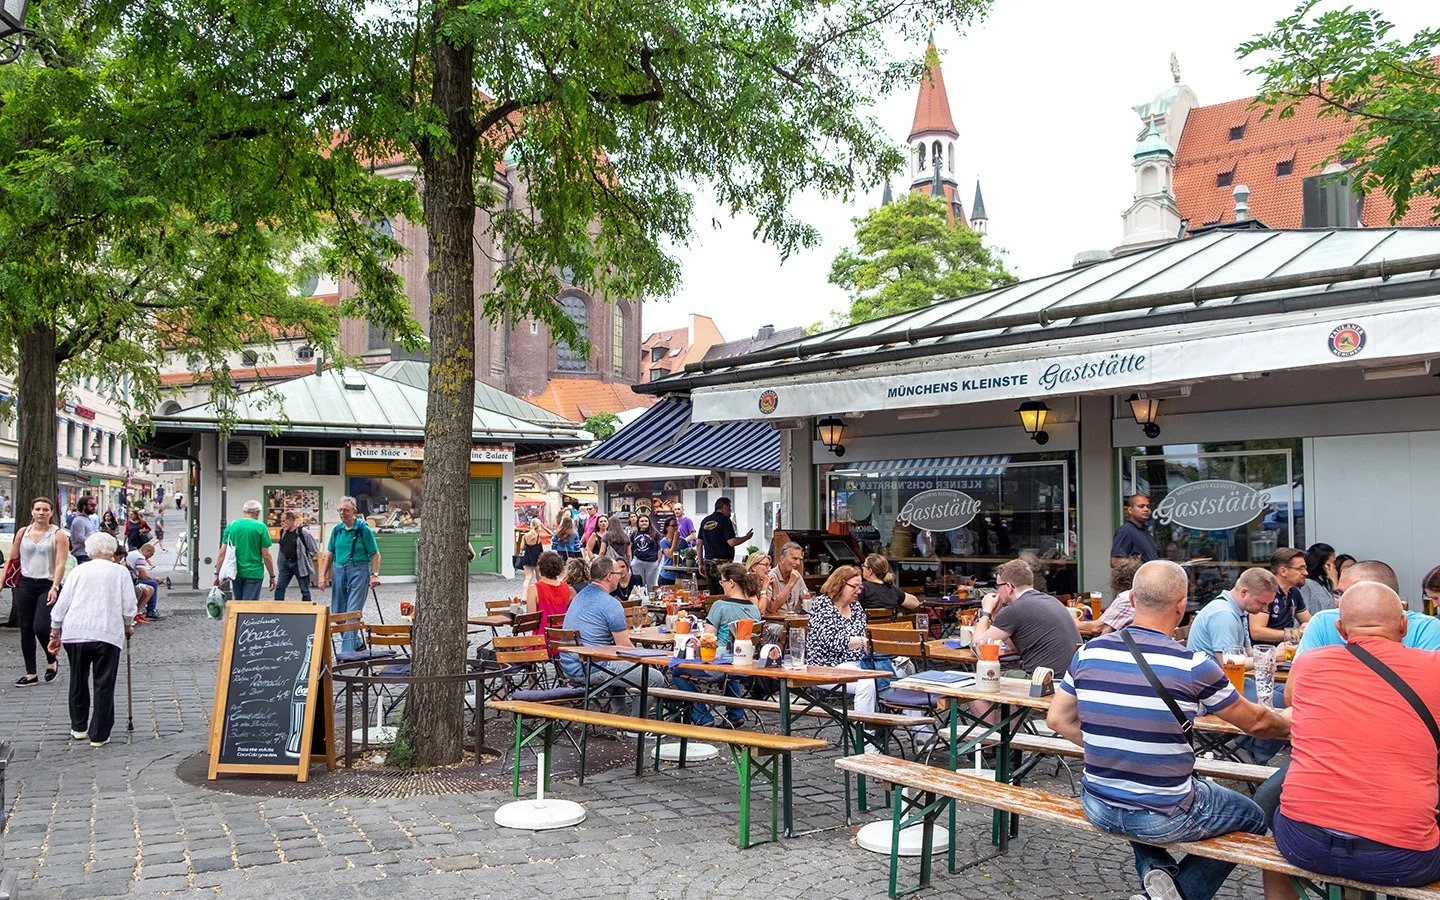 The Viktualienmarkt food market in Munich